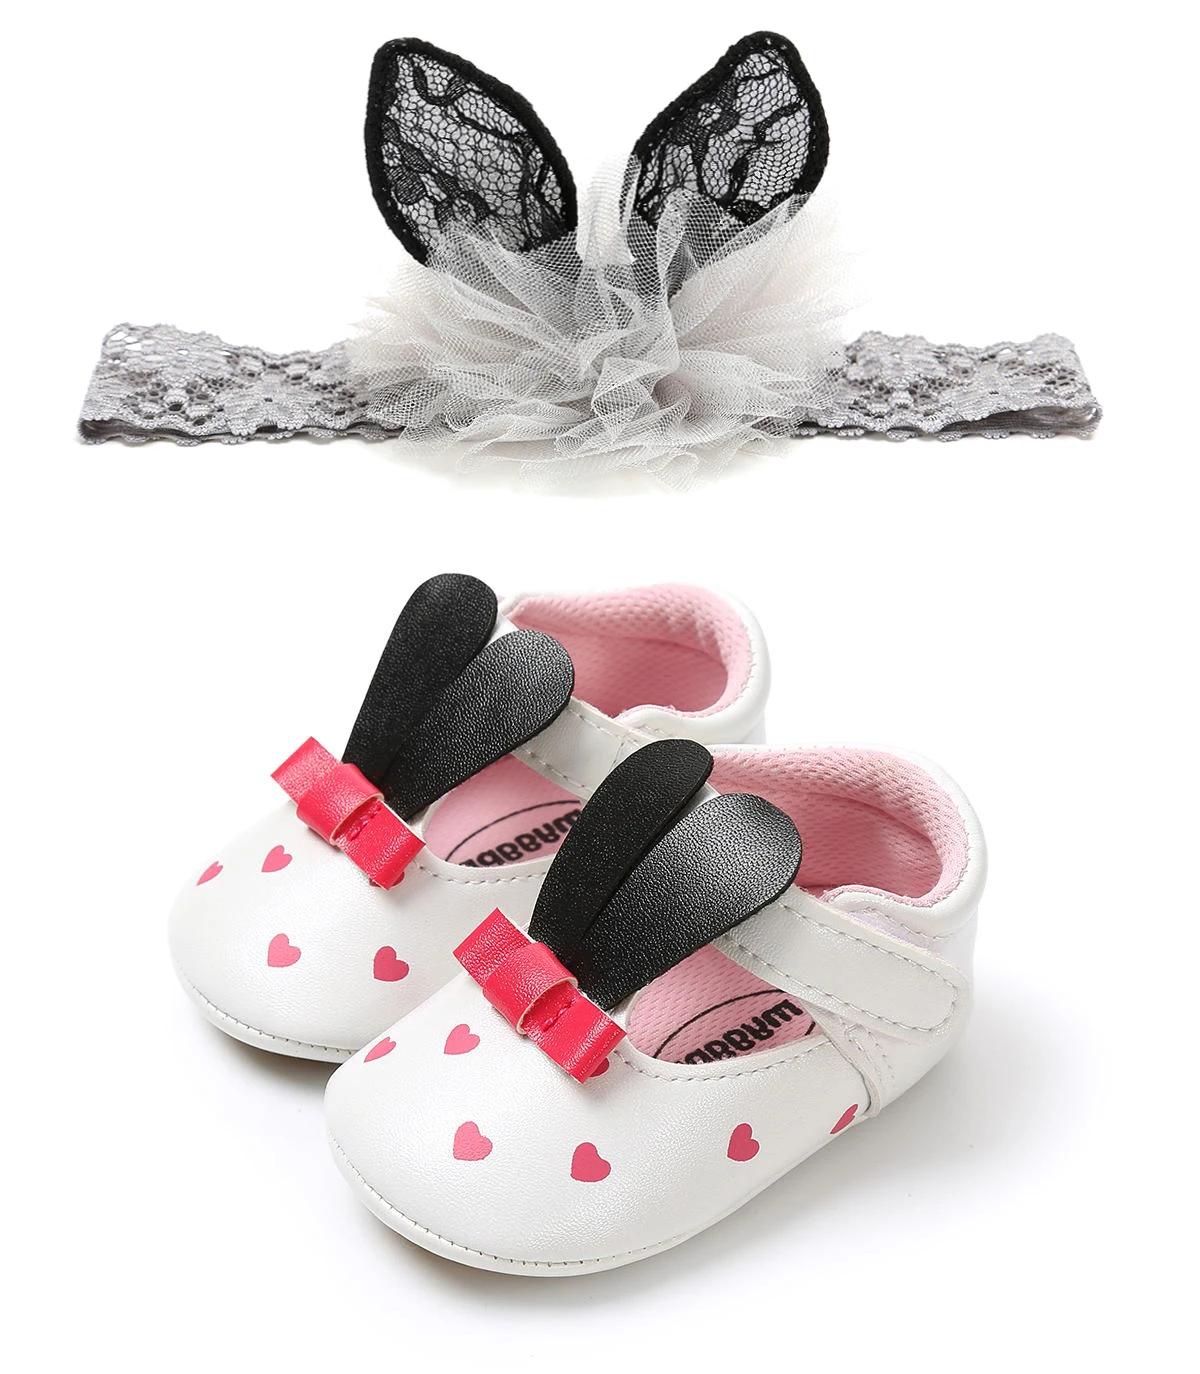 Повседневная обувь для новорожденных девочек; нескользящая кожаная обувь с бантиком для детской кроватки; 2 предмета в комплекте; кроссовки на мягкой подошве для маленьких девочек; Размеры s 0-18 M